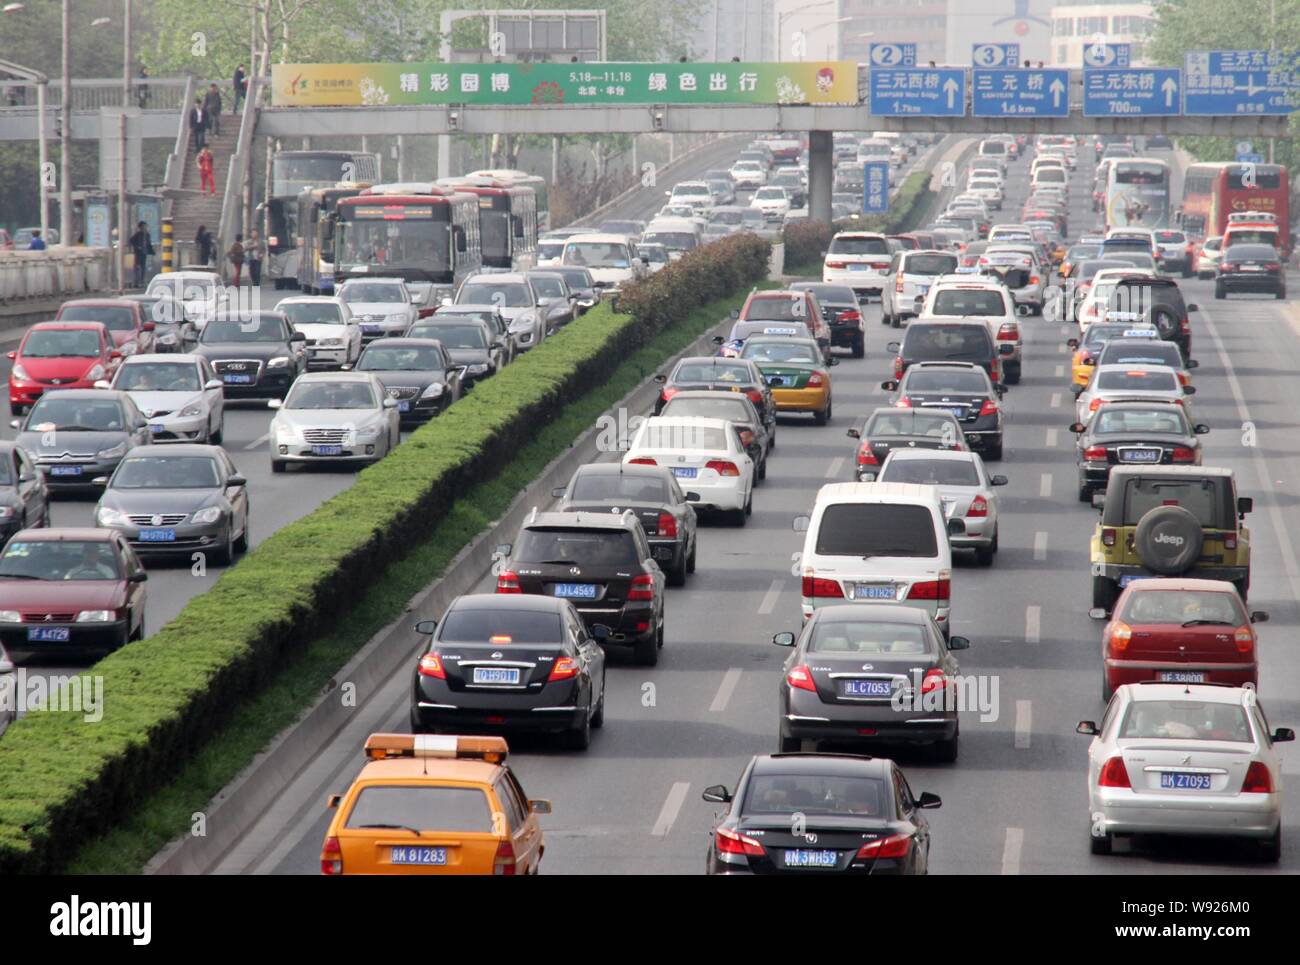 ---- Massen von Autos und Bussen bewegen Sie langsam im Stau auf einer Straße in Peking, China, 28. April 2013. Auf den Spuren von größeren Metropoli Stockfoto